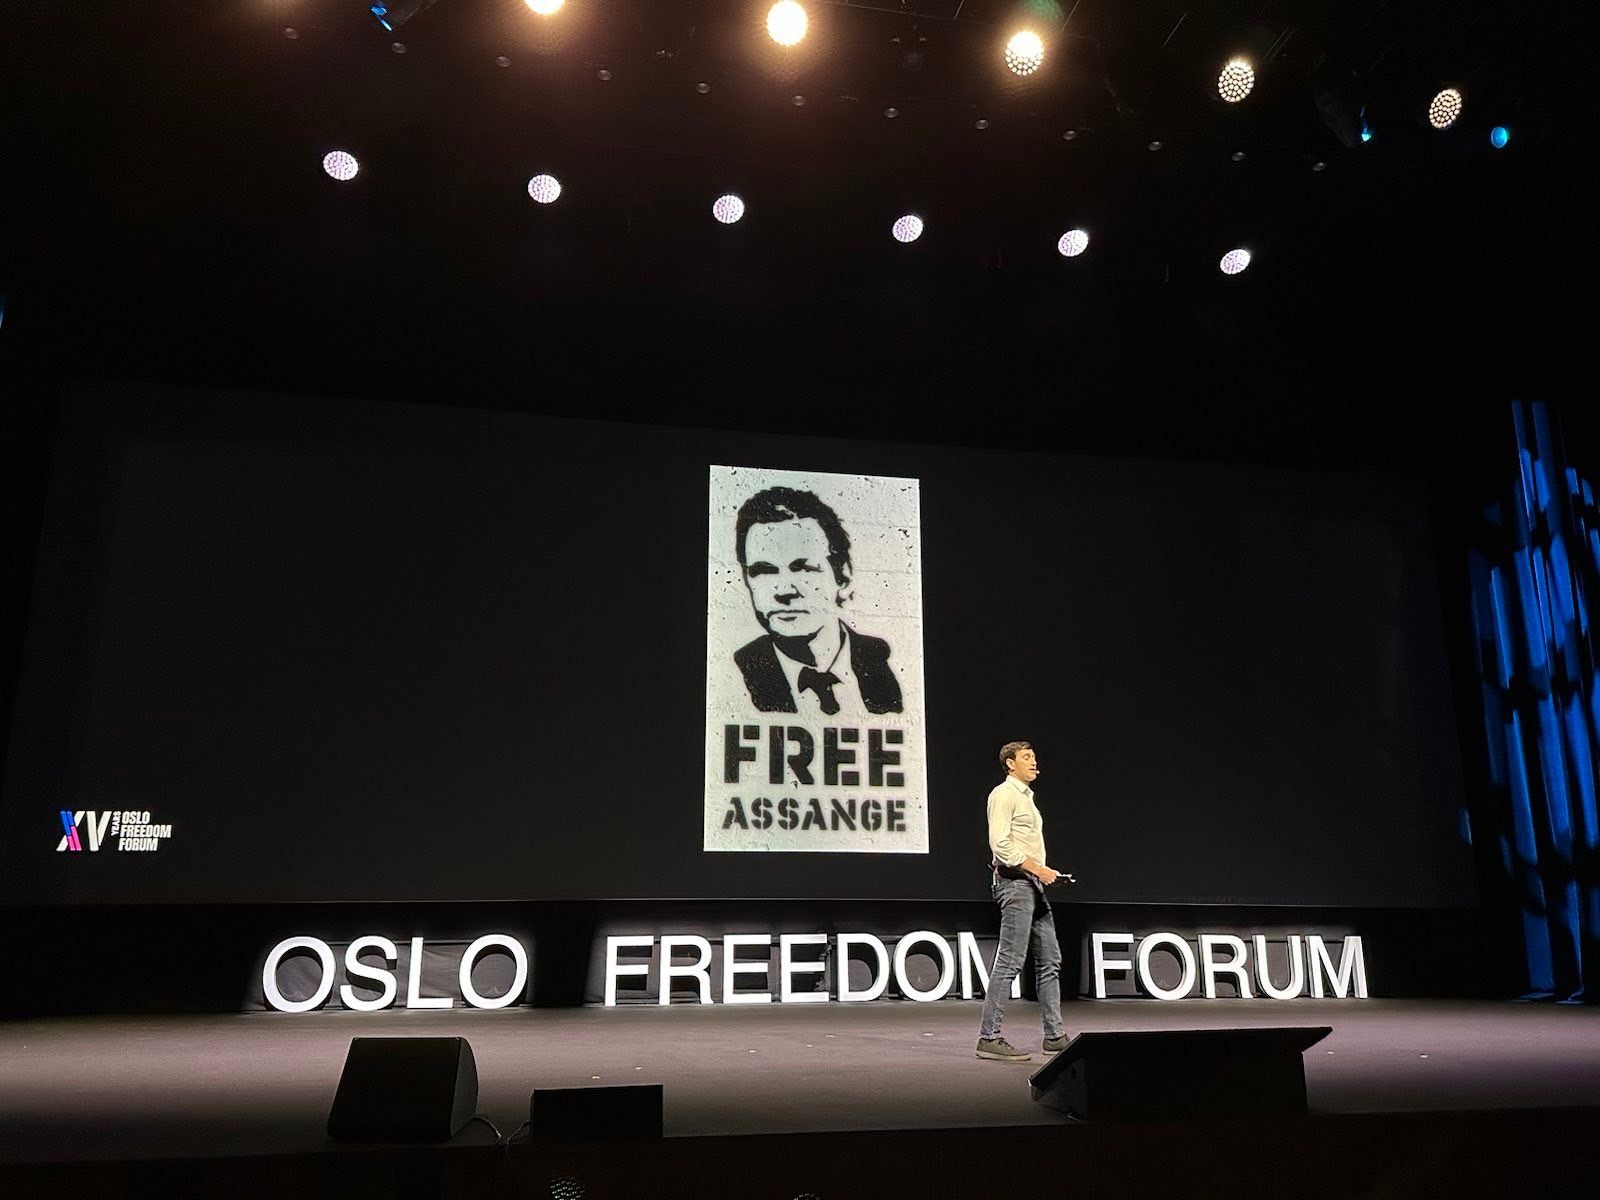 Alex Gladstein speaking at the Oslo Freedom Forum. Image courtesy of Alex Gladstein.